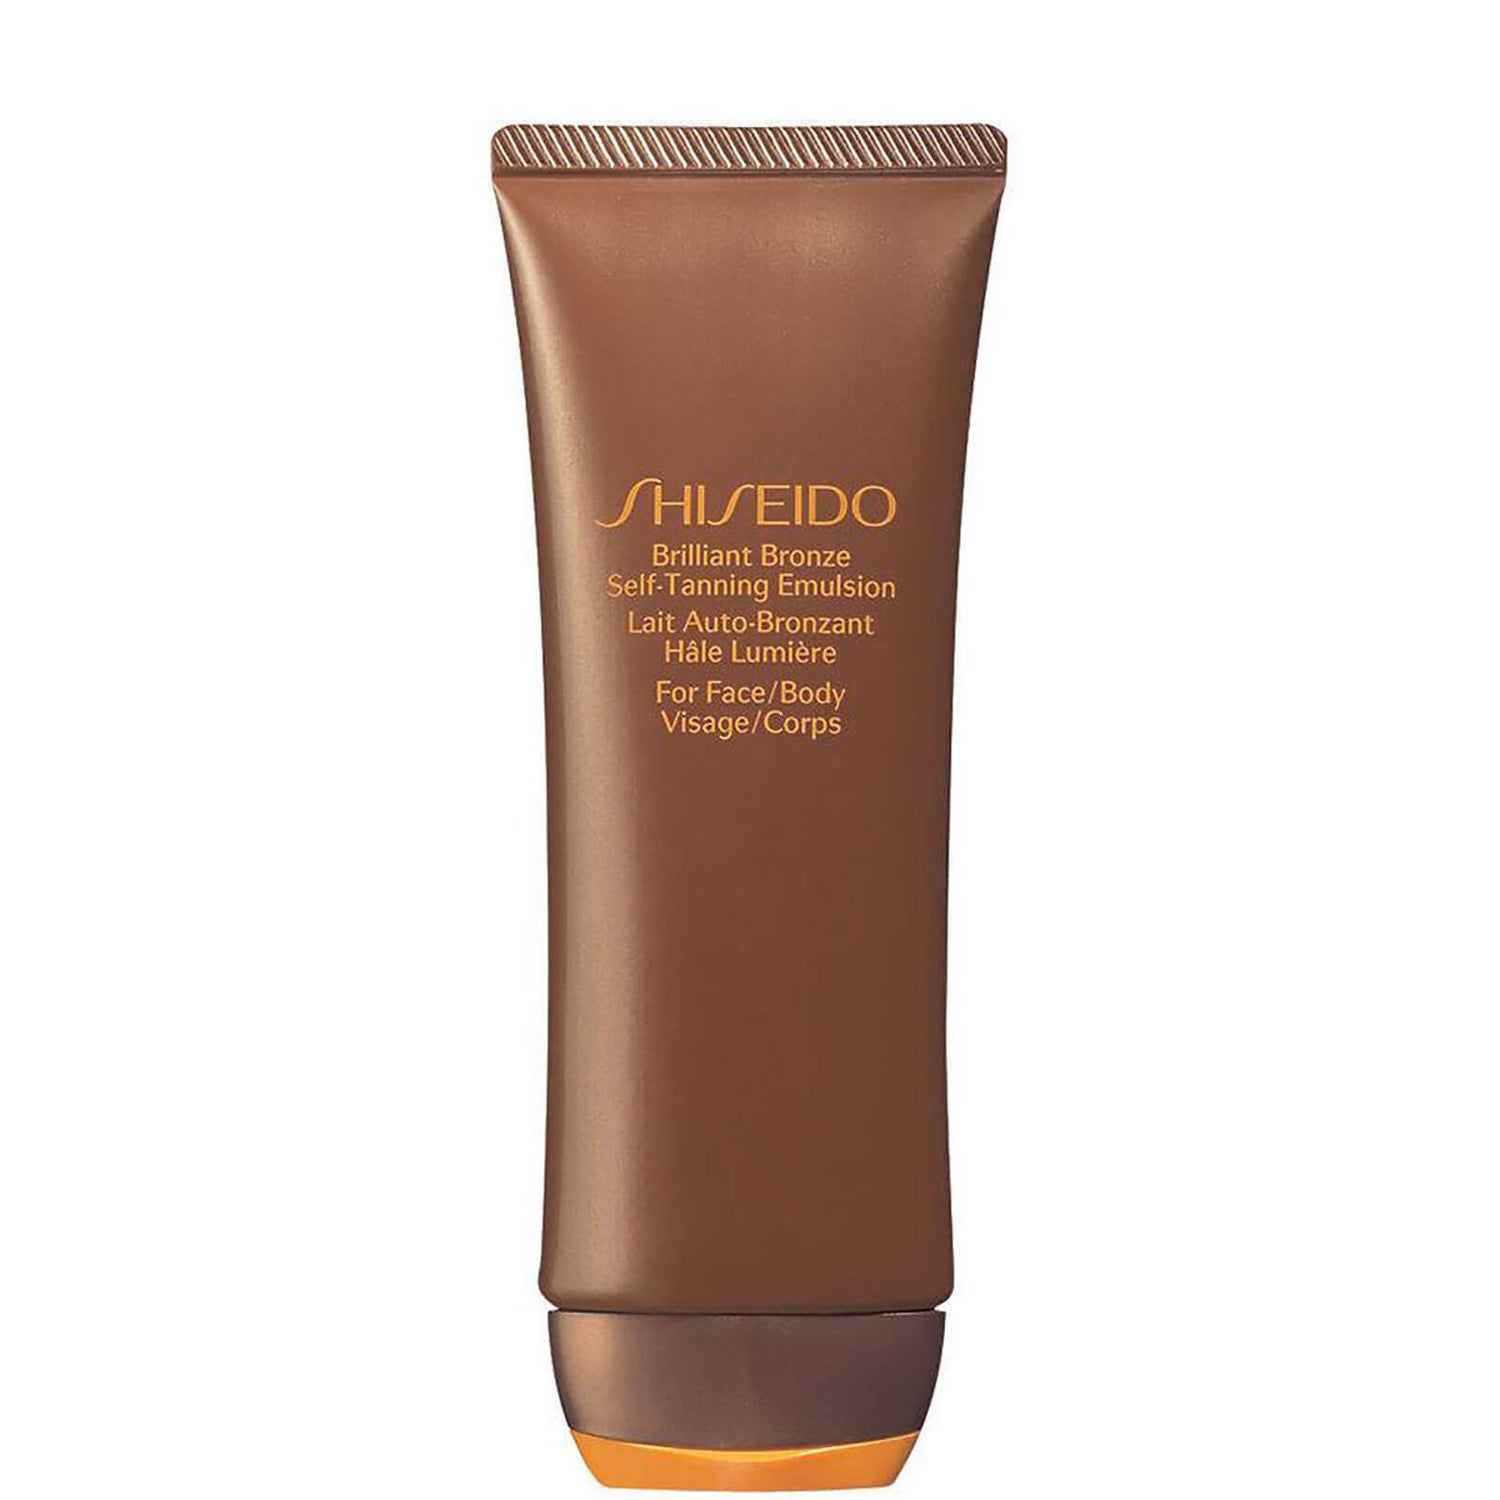 Emulsão Autobronzeadora Brilliant Bronze (Rosto e Corpo) da Shiseido (100 ml)